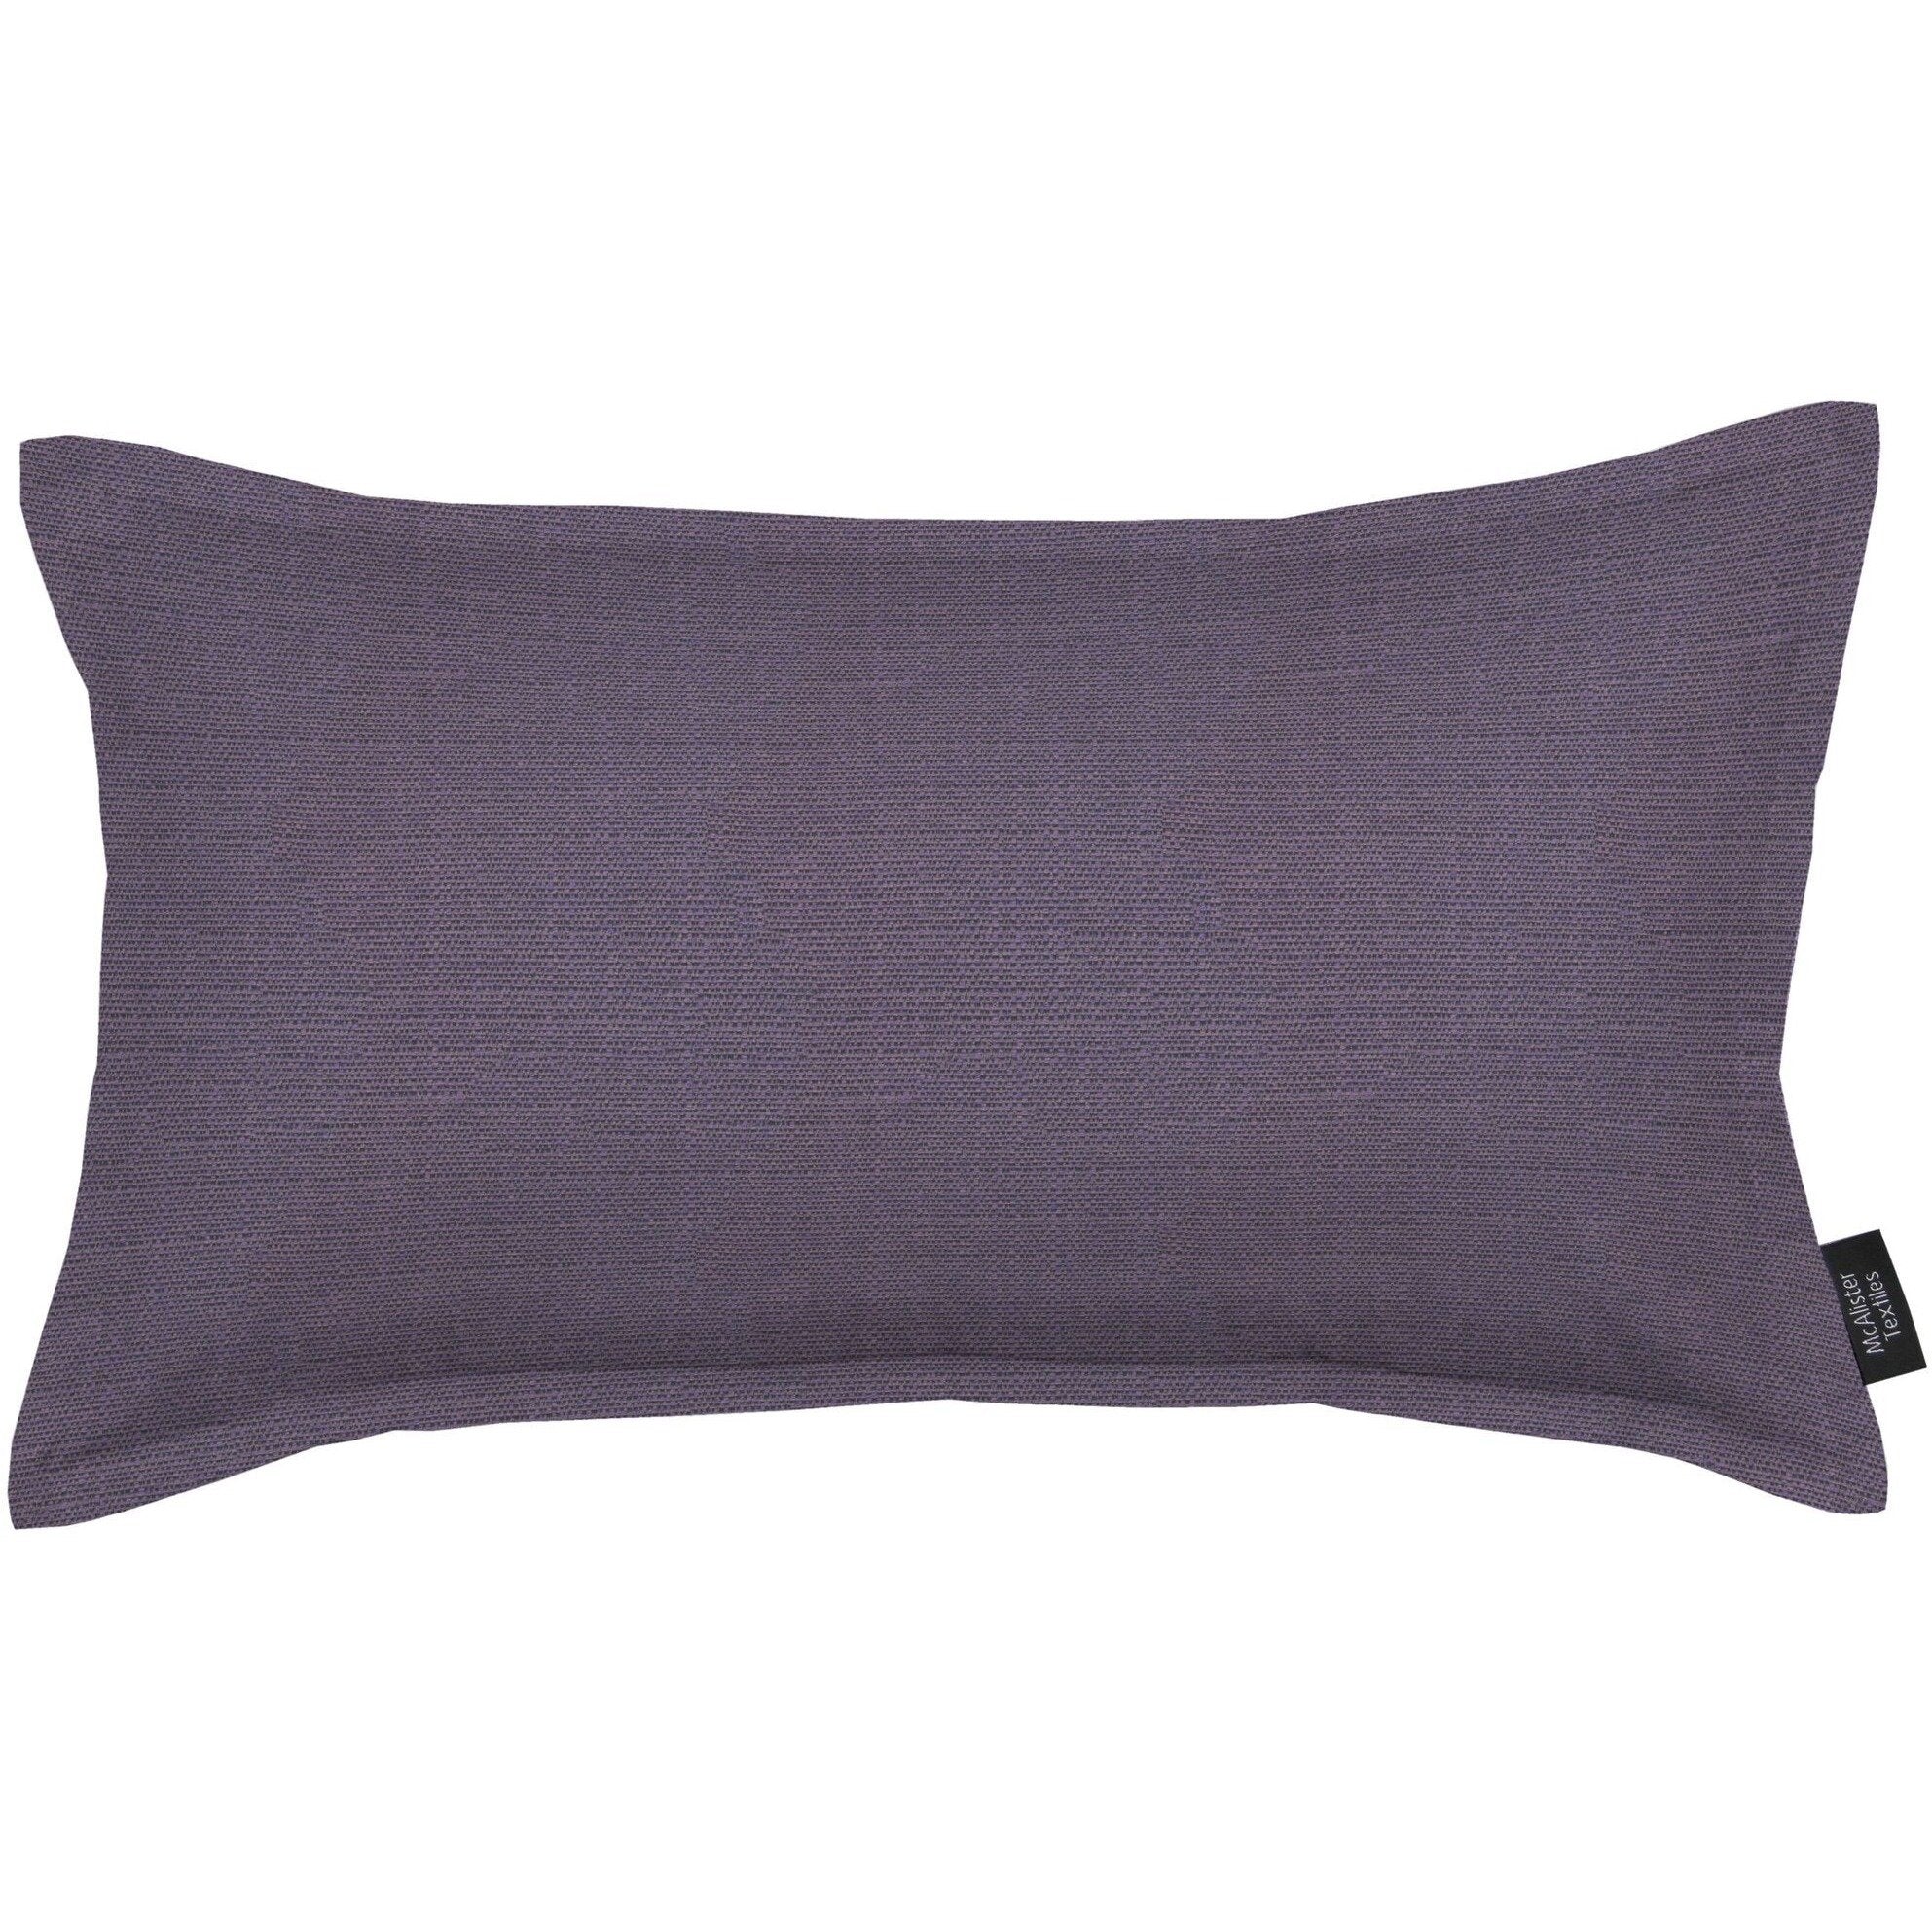 McAlister Textiles Savannah Aubergine Purple Pillow Pillow Cover Only 50cm x 30cm 